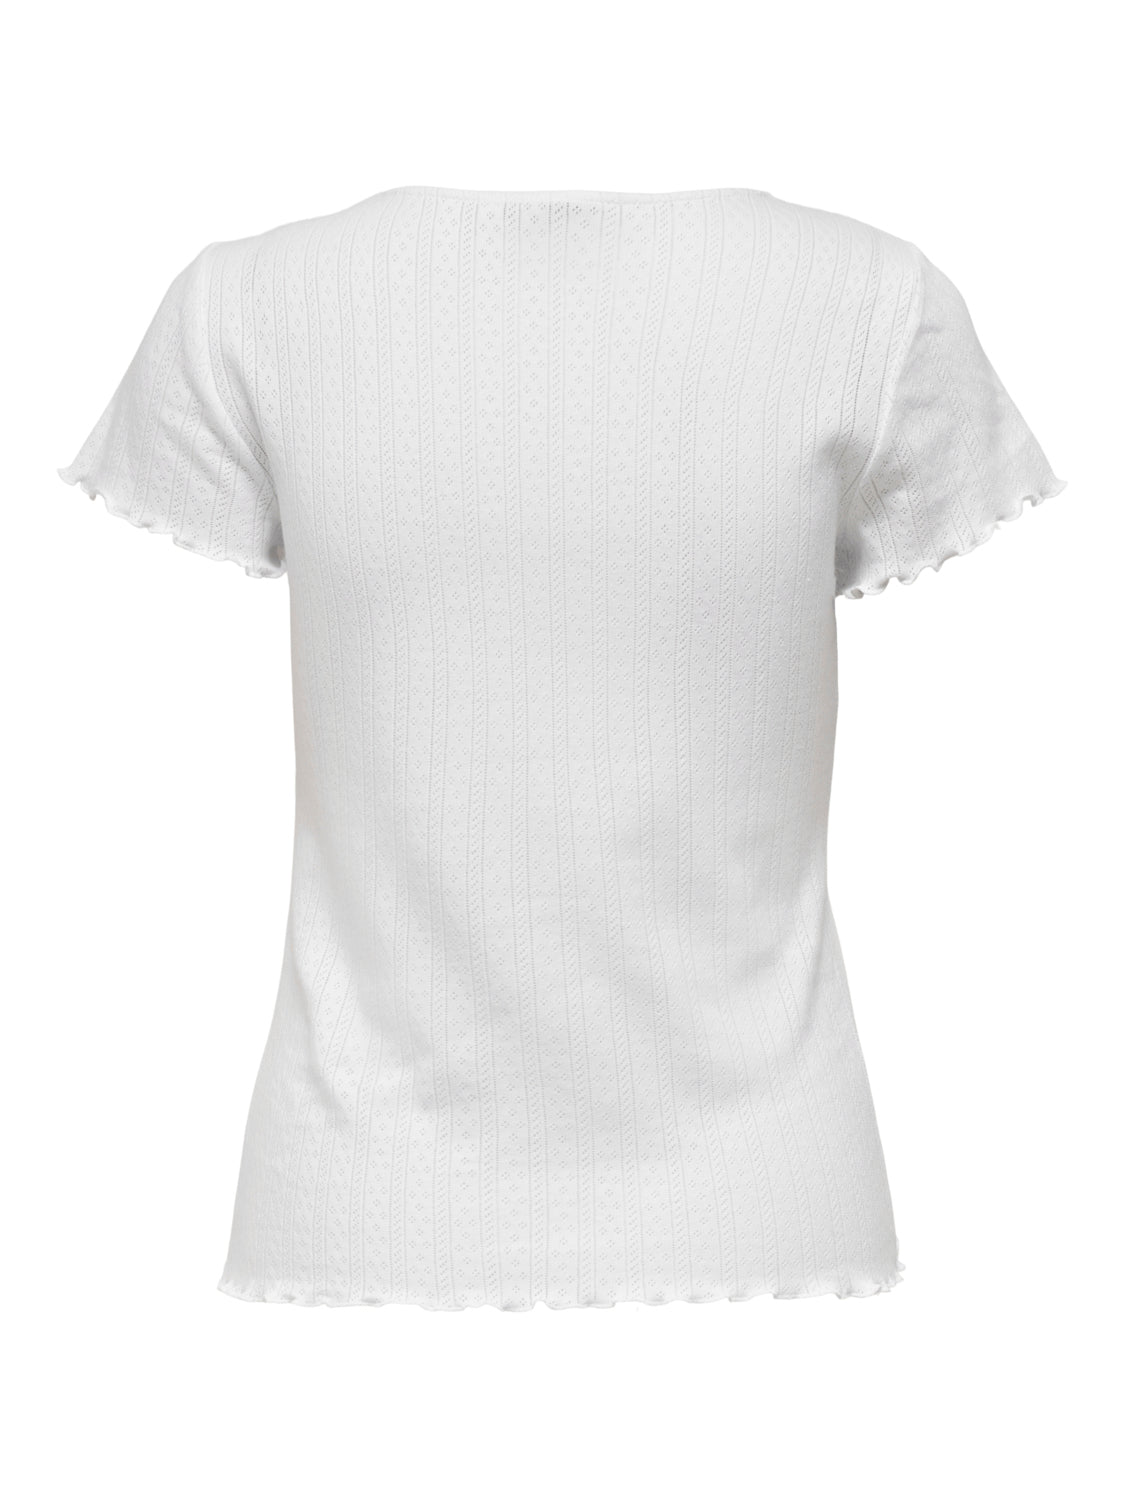 ONLCARLOTTA T-Shirts & Tops - White